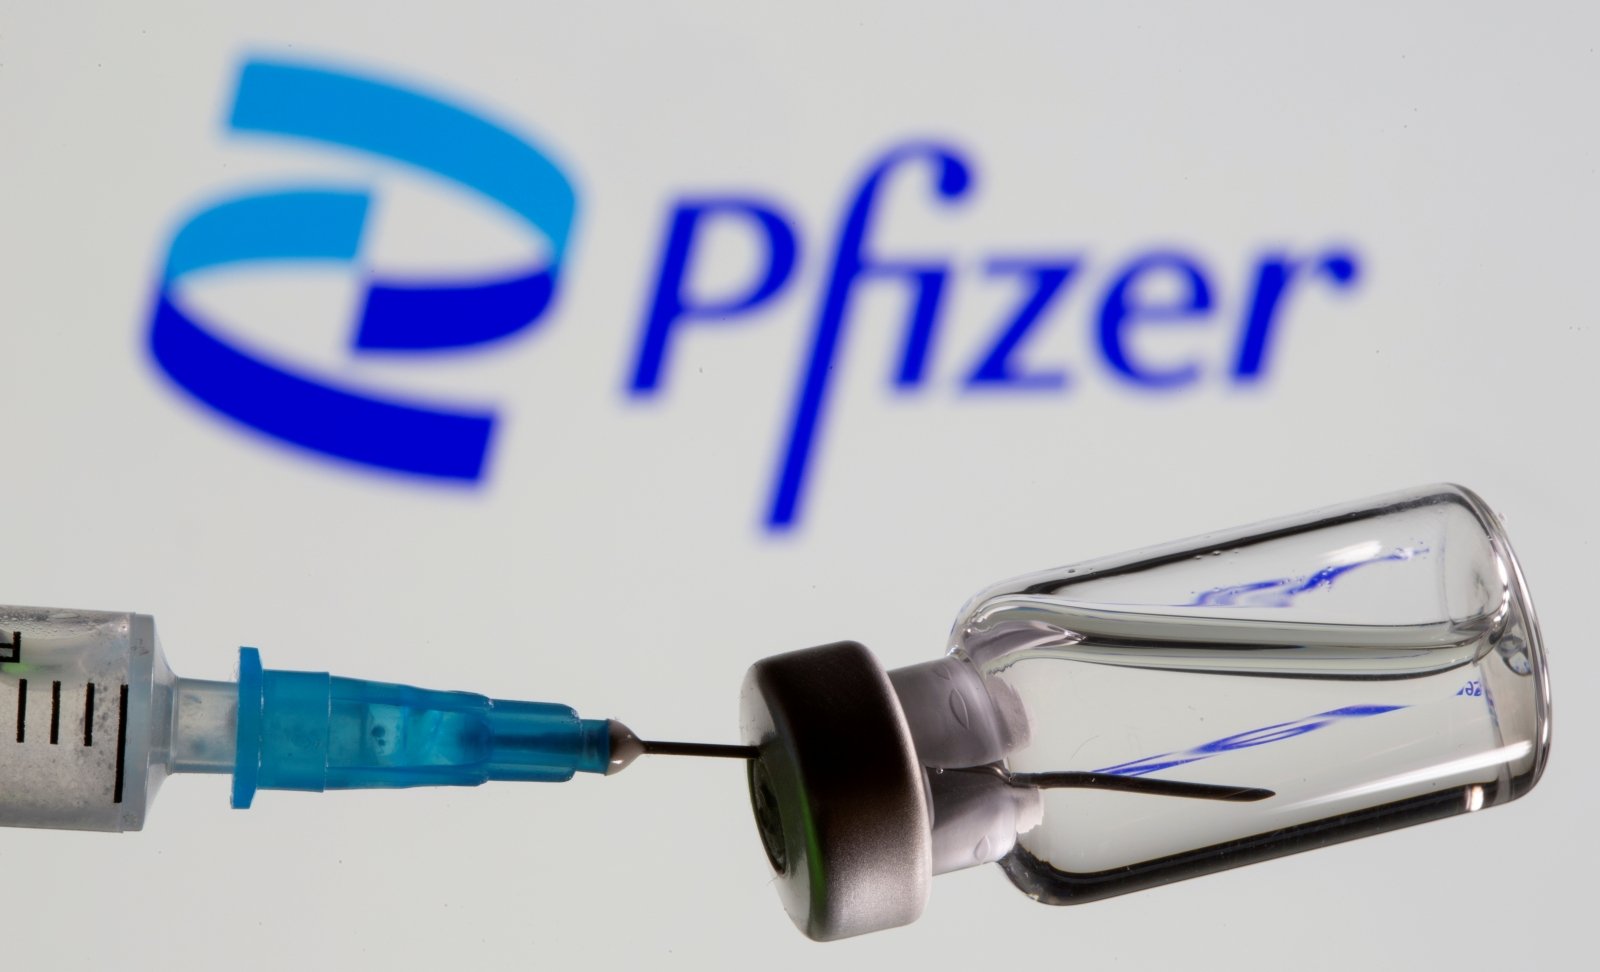 Цена вакцины Pfizer, возможно, будет варьироваться – Цой  